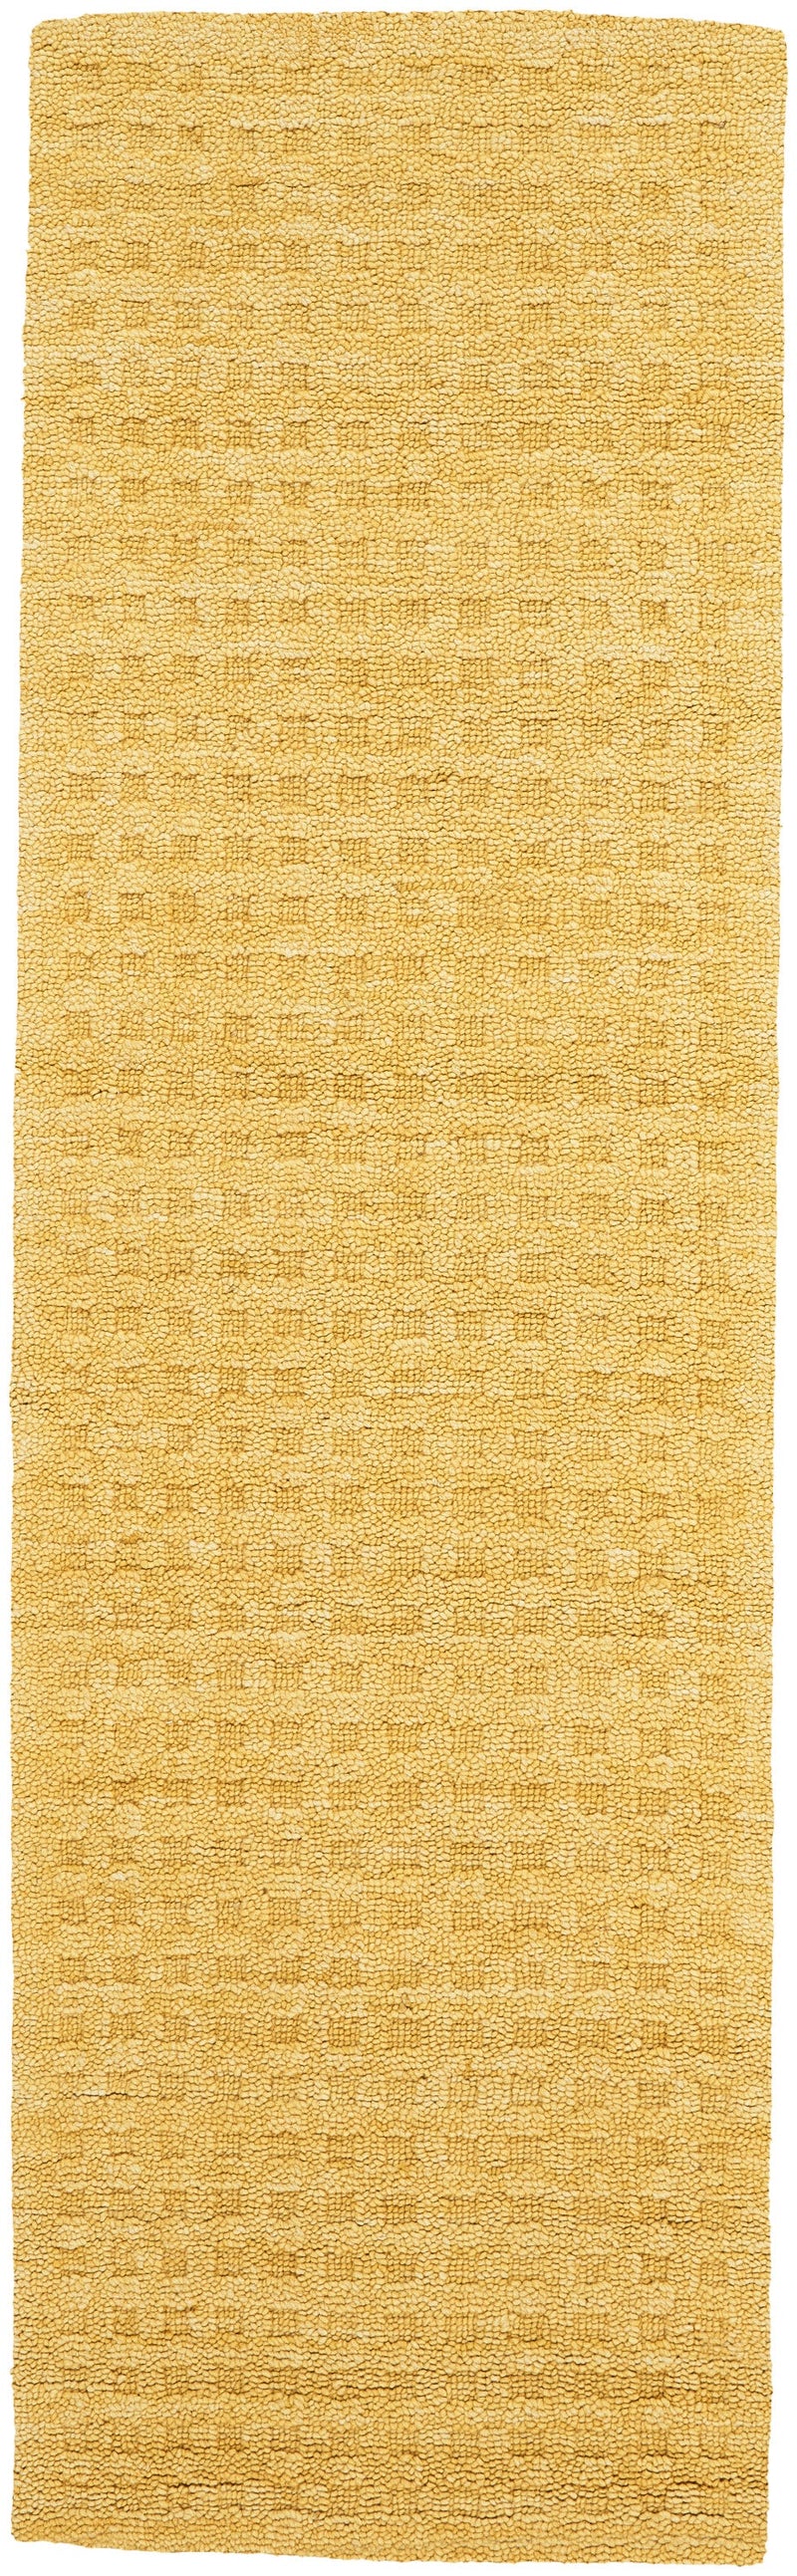 media image for marana handmade gold rug by nourison 99446400345 redo 2 280